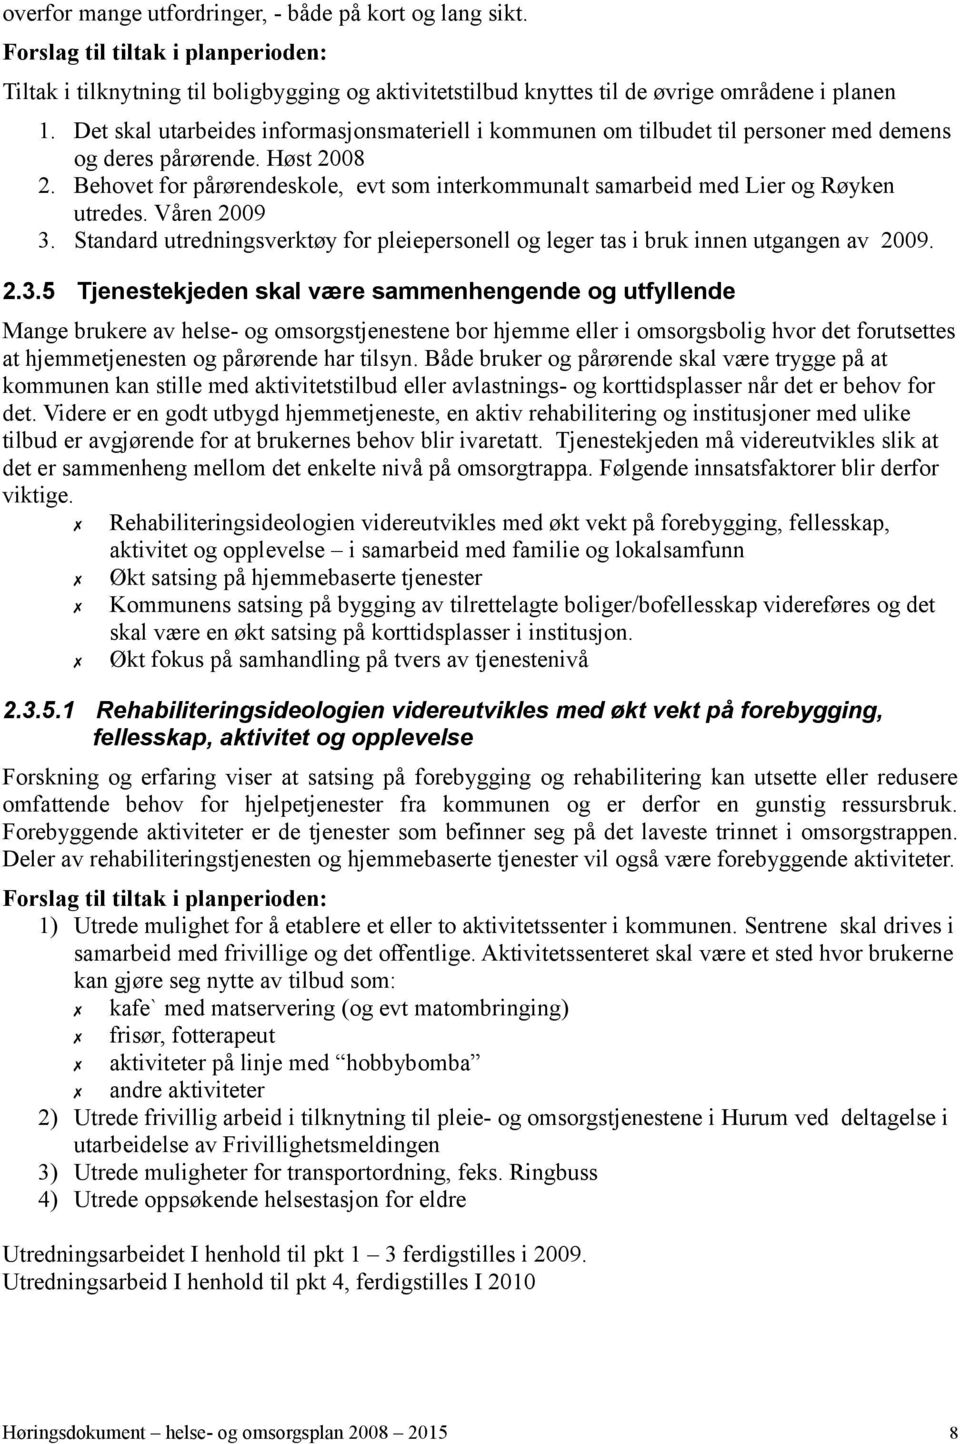 Behovet for pårørendeskole, evt som interkommunalt samarbeid med Lier og Røyken utredes. Våren 2009 3.